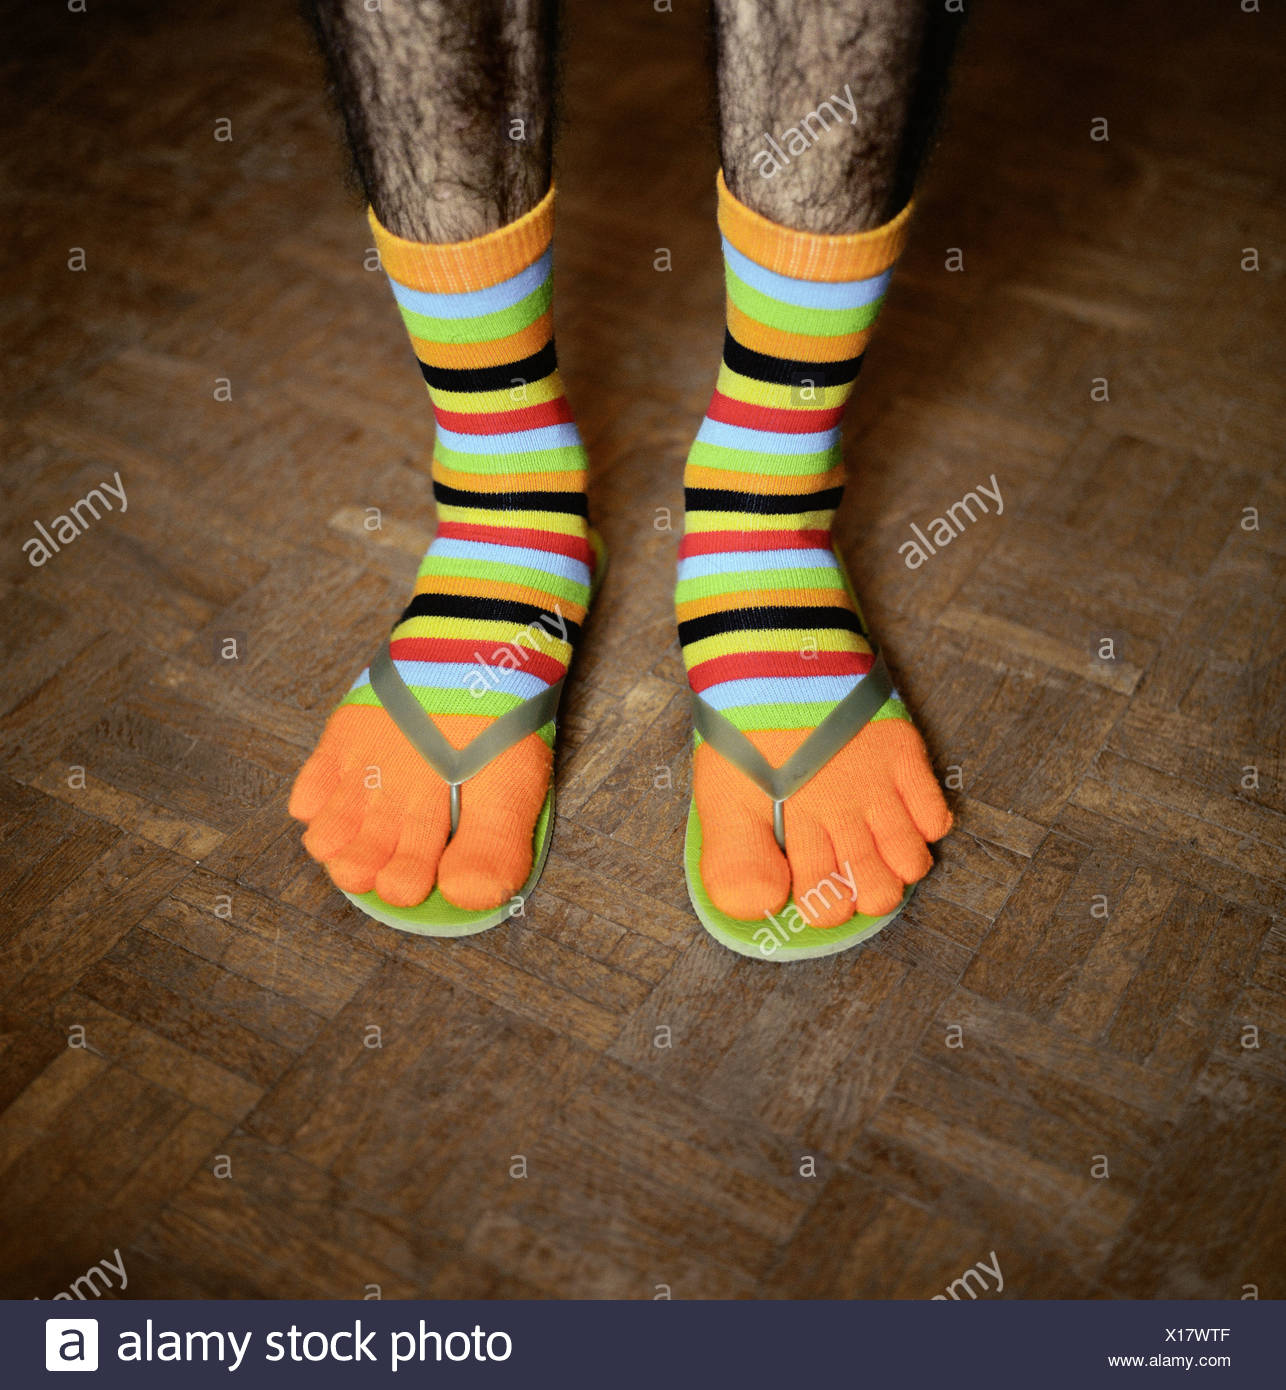 flip flops with socks images